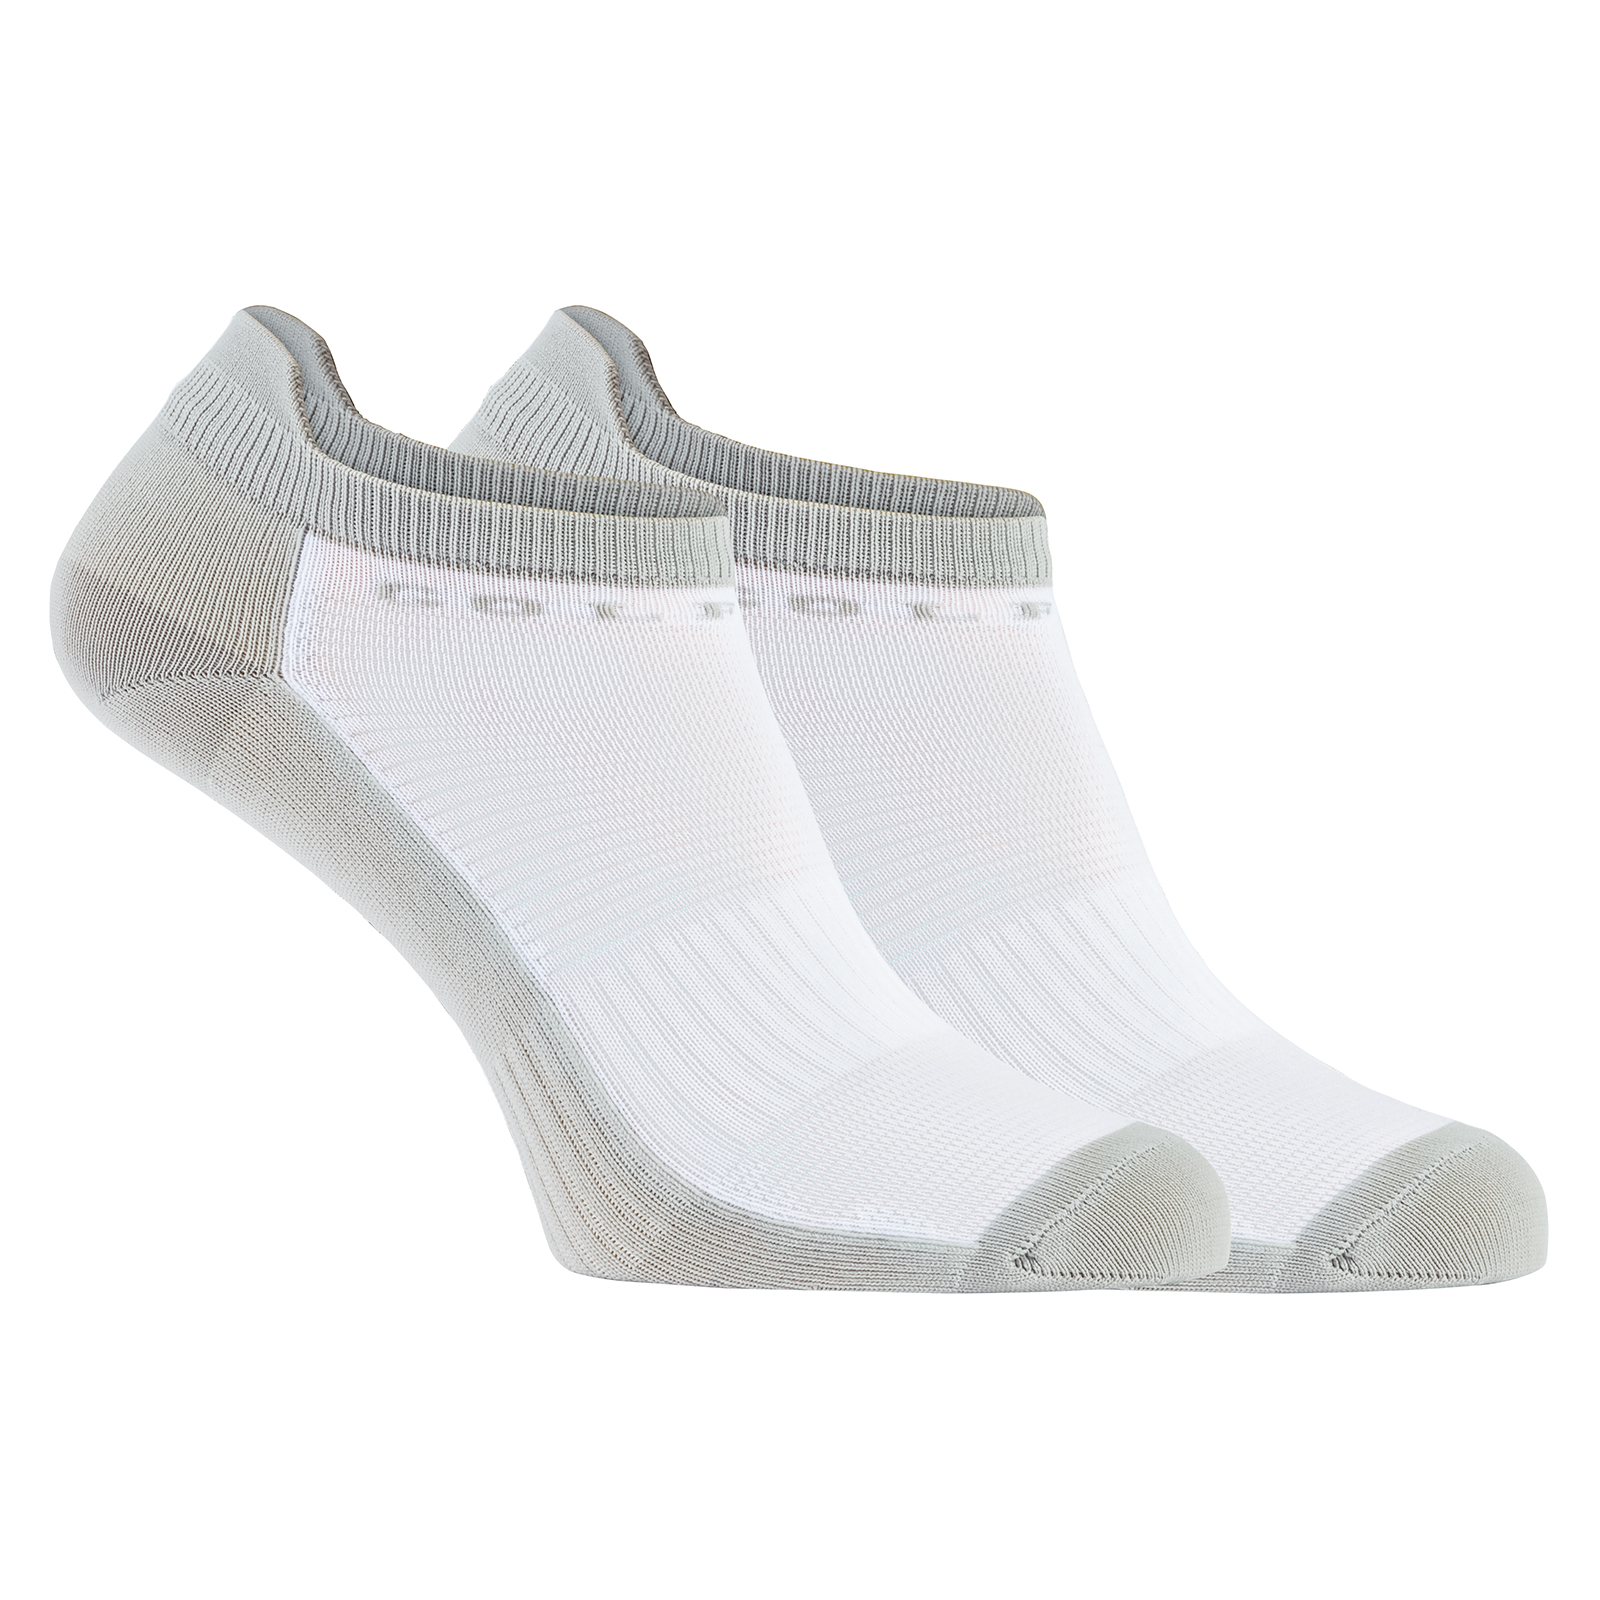 Damen Thermo Golf Socken aus feuchtigkeitsregulierendem Material